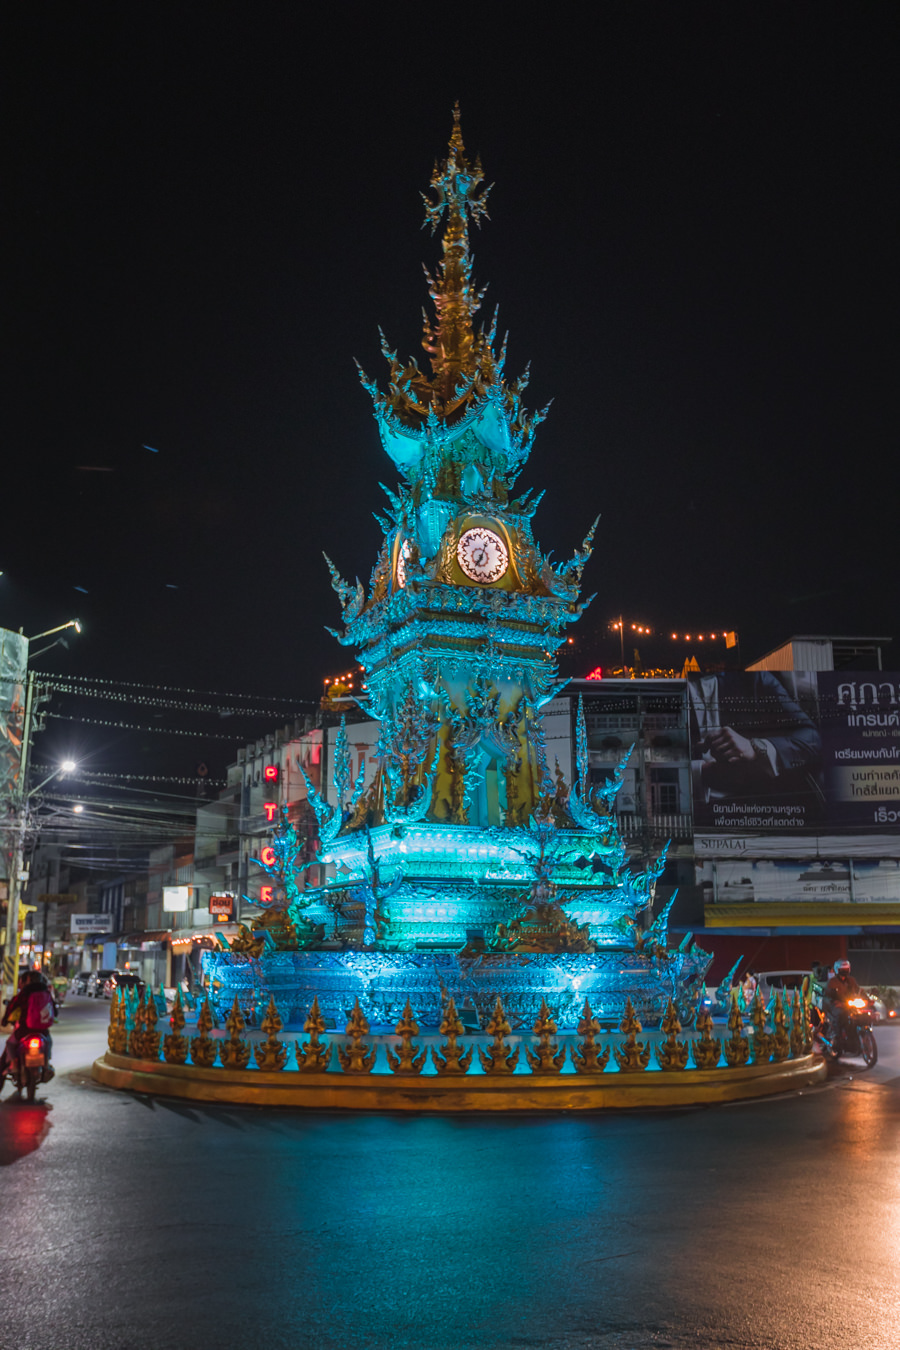 Chiang Rai Thailand - Clocktower